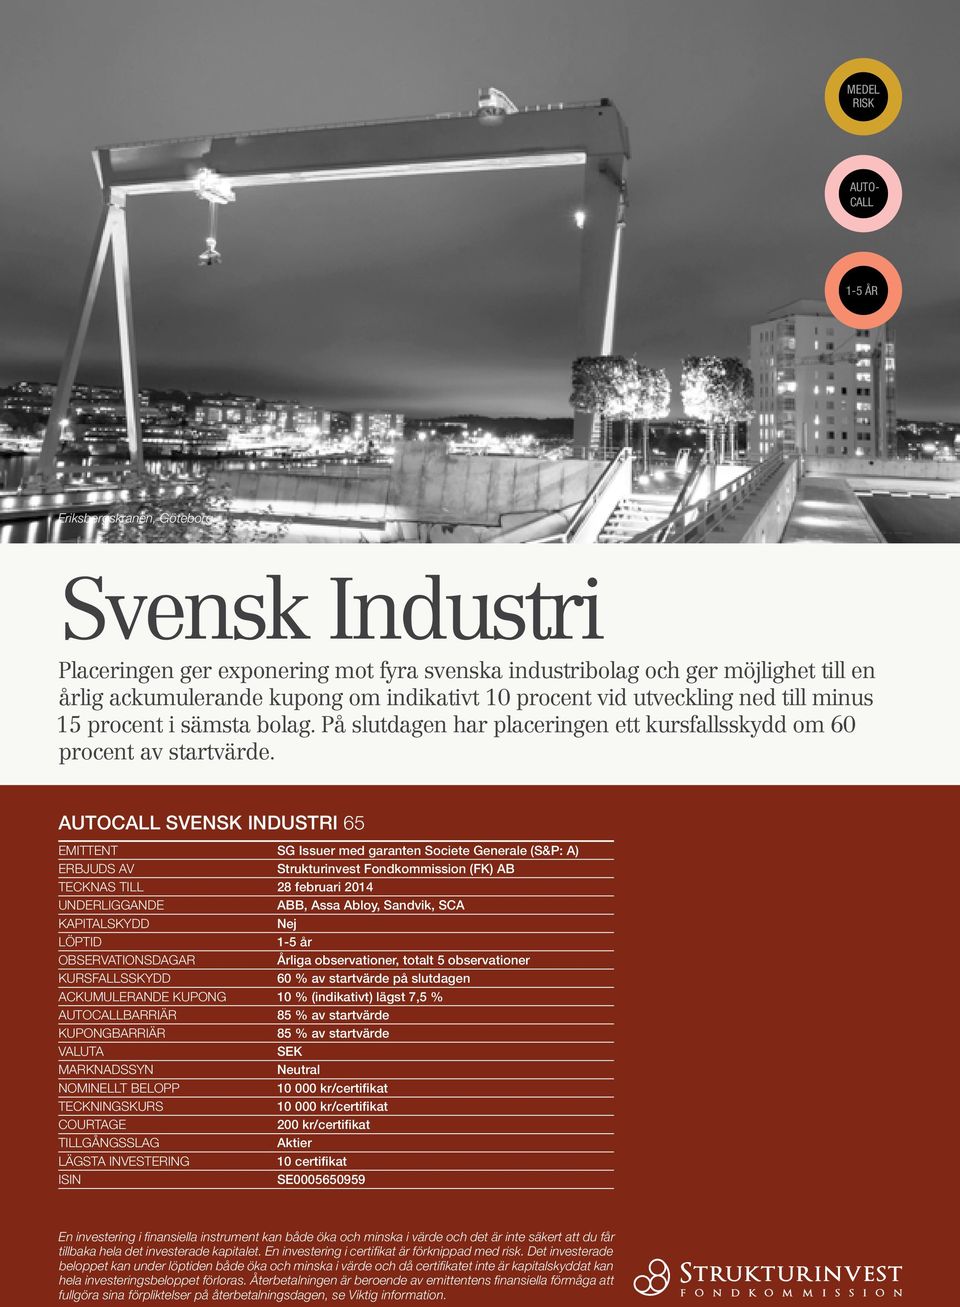 Autocall Svensk Industri 65 Emittent SG Issuer med garanten Societe Generale (S&P: A) ERBJUDS AV Strukturinvest Fondkommission (FK) AB Tecknas till 28 februari 2014 UNDERLIGGANDE ABB, Assa Abloy,